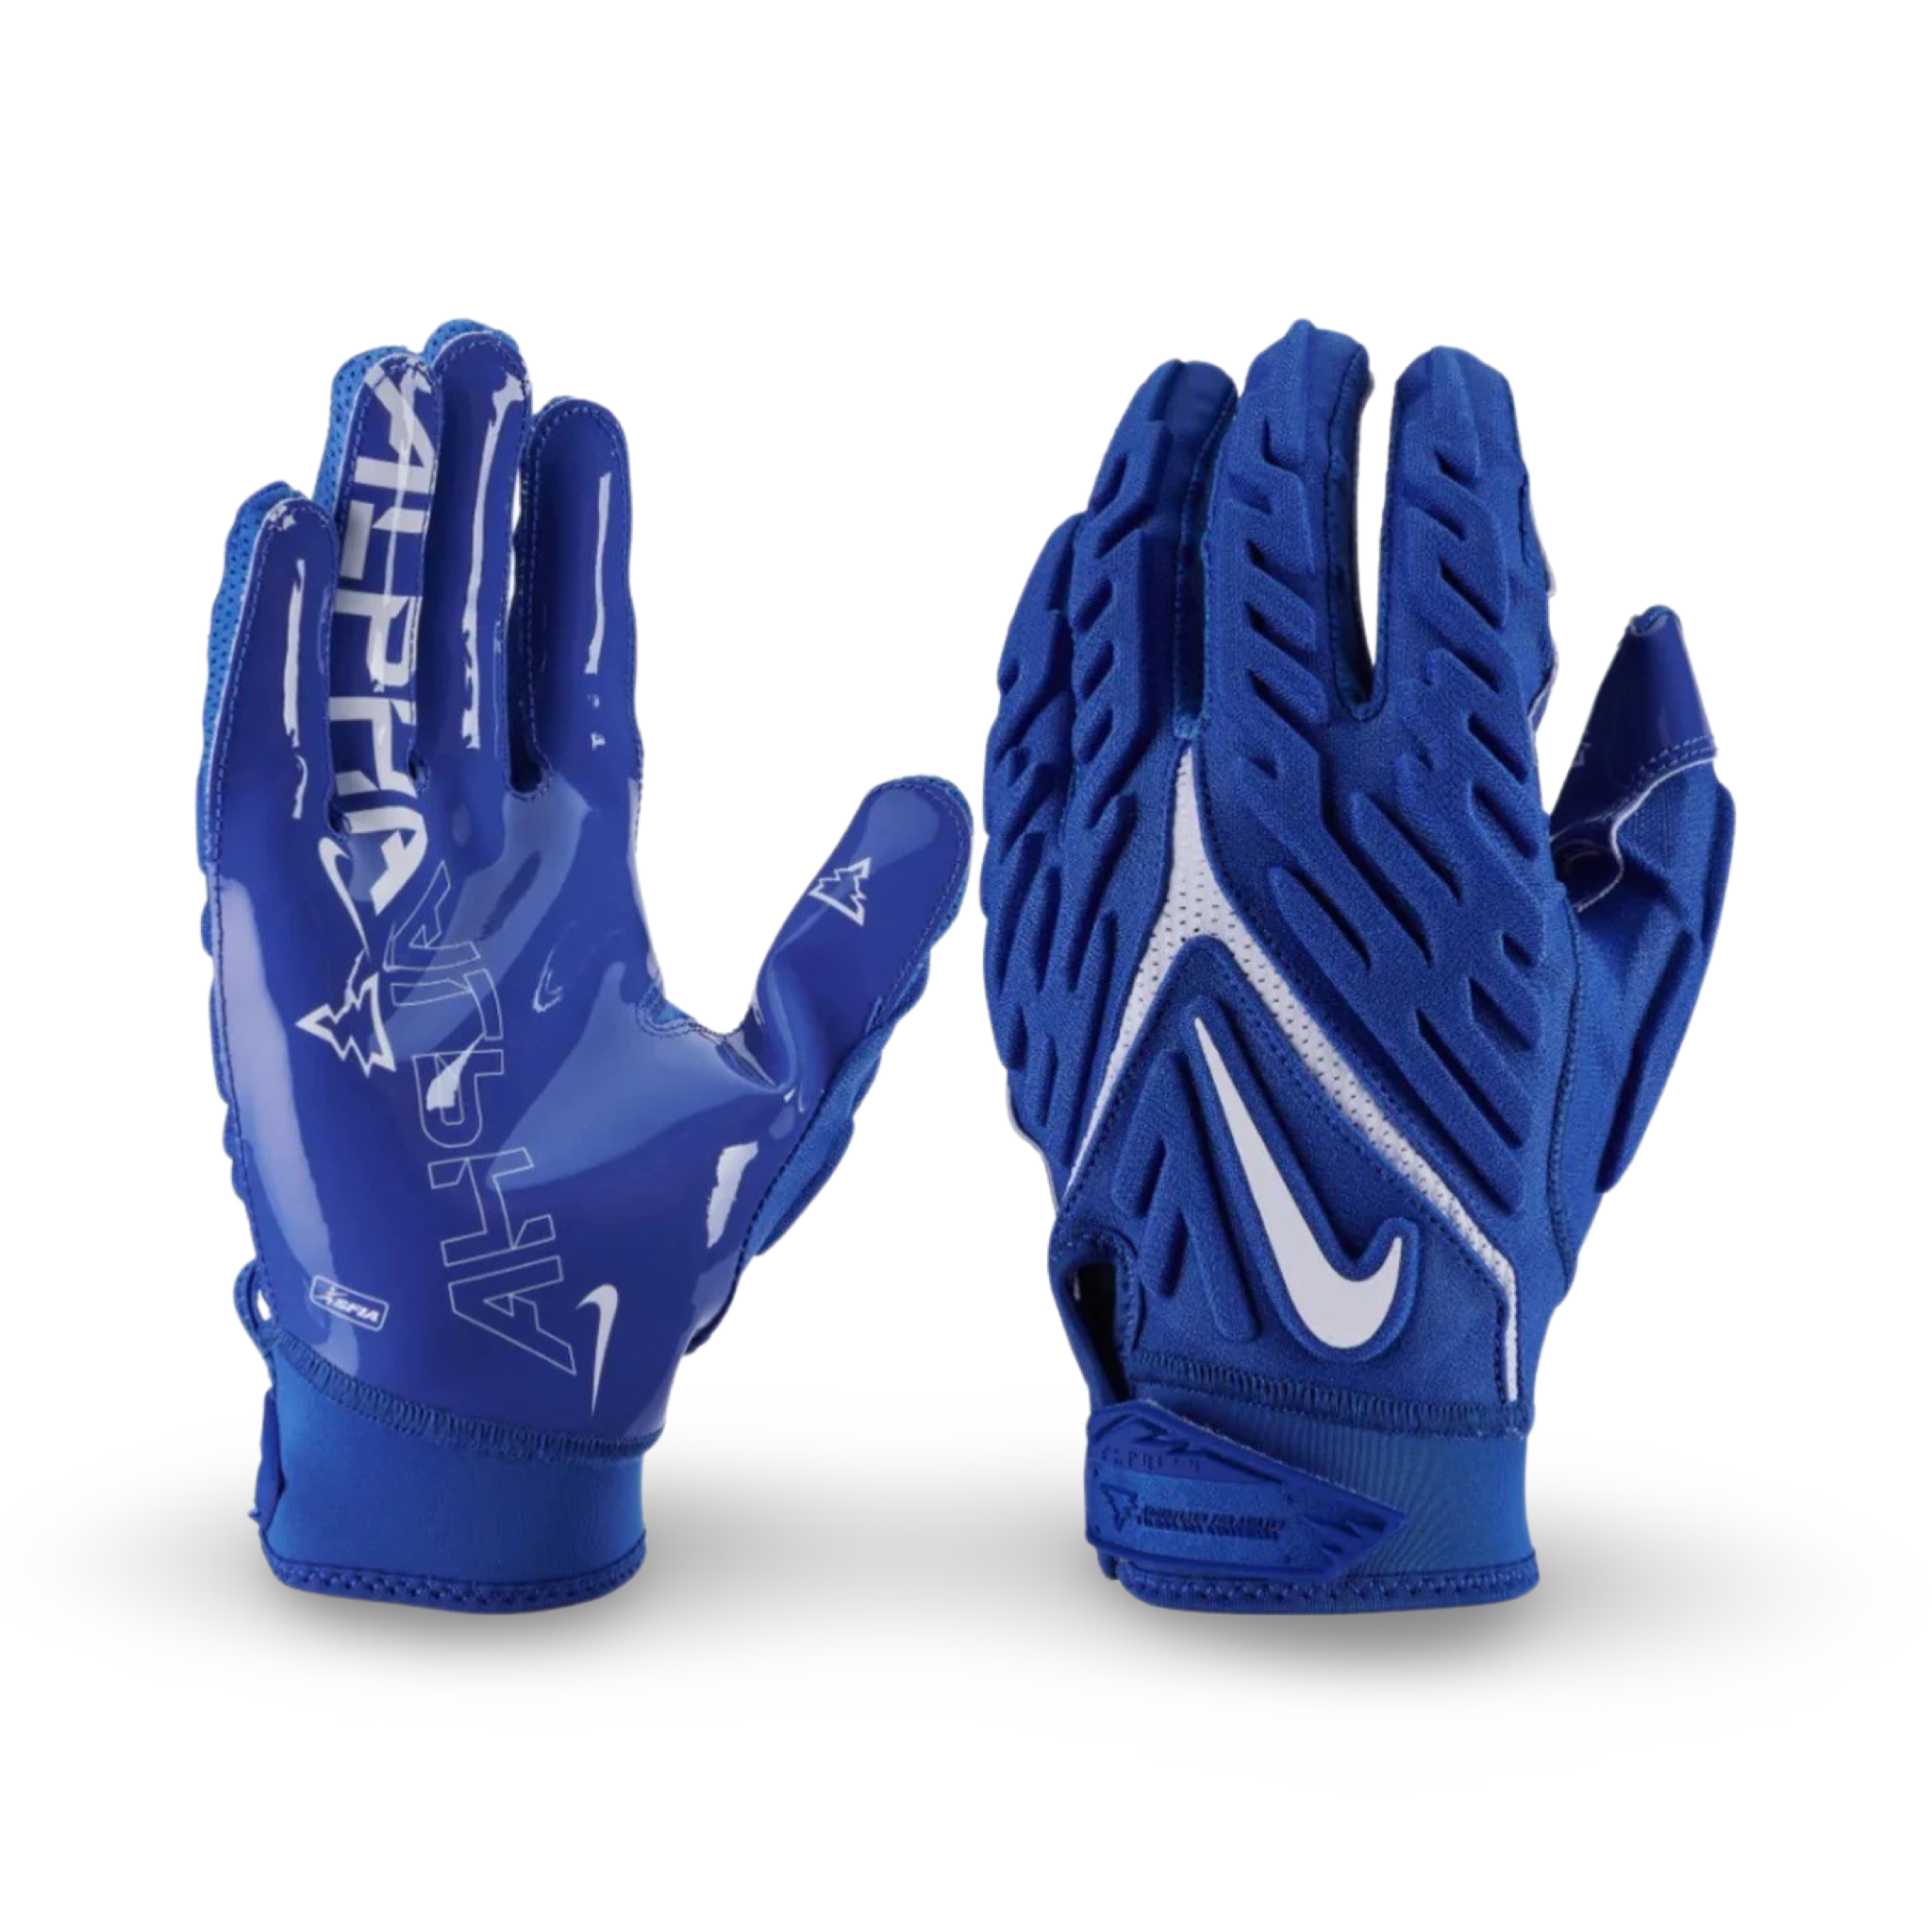 Nike Superbad 6.0 - Black Gloves/Gants